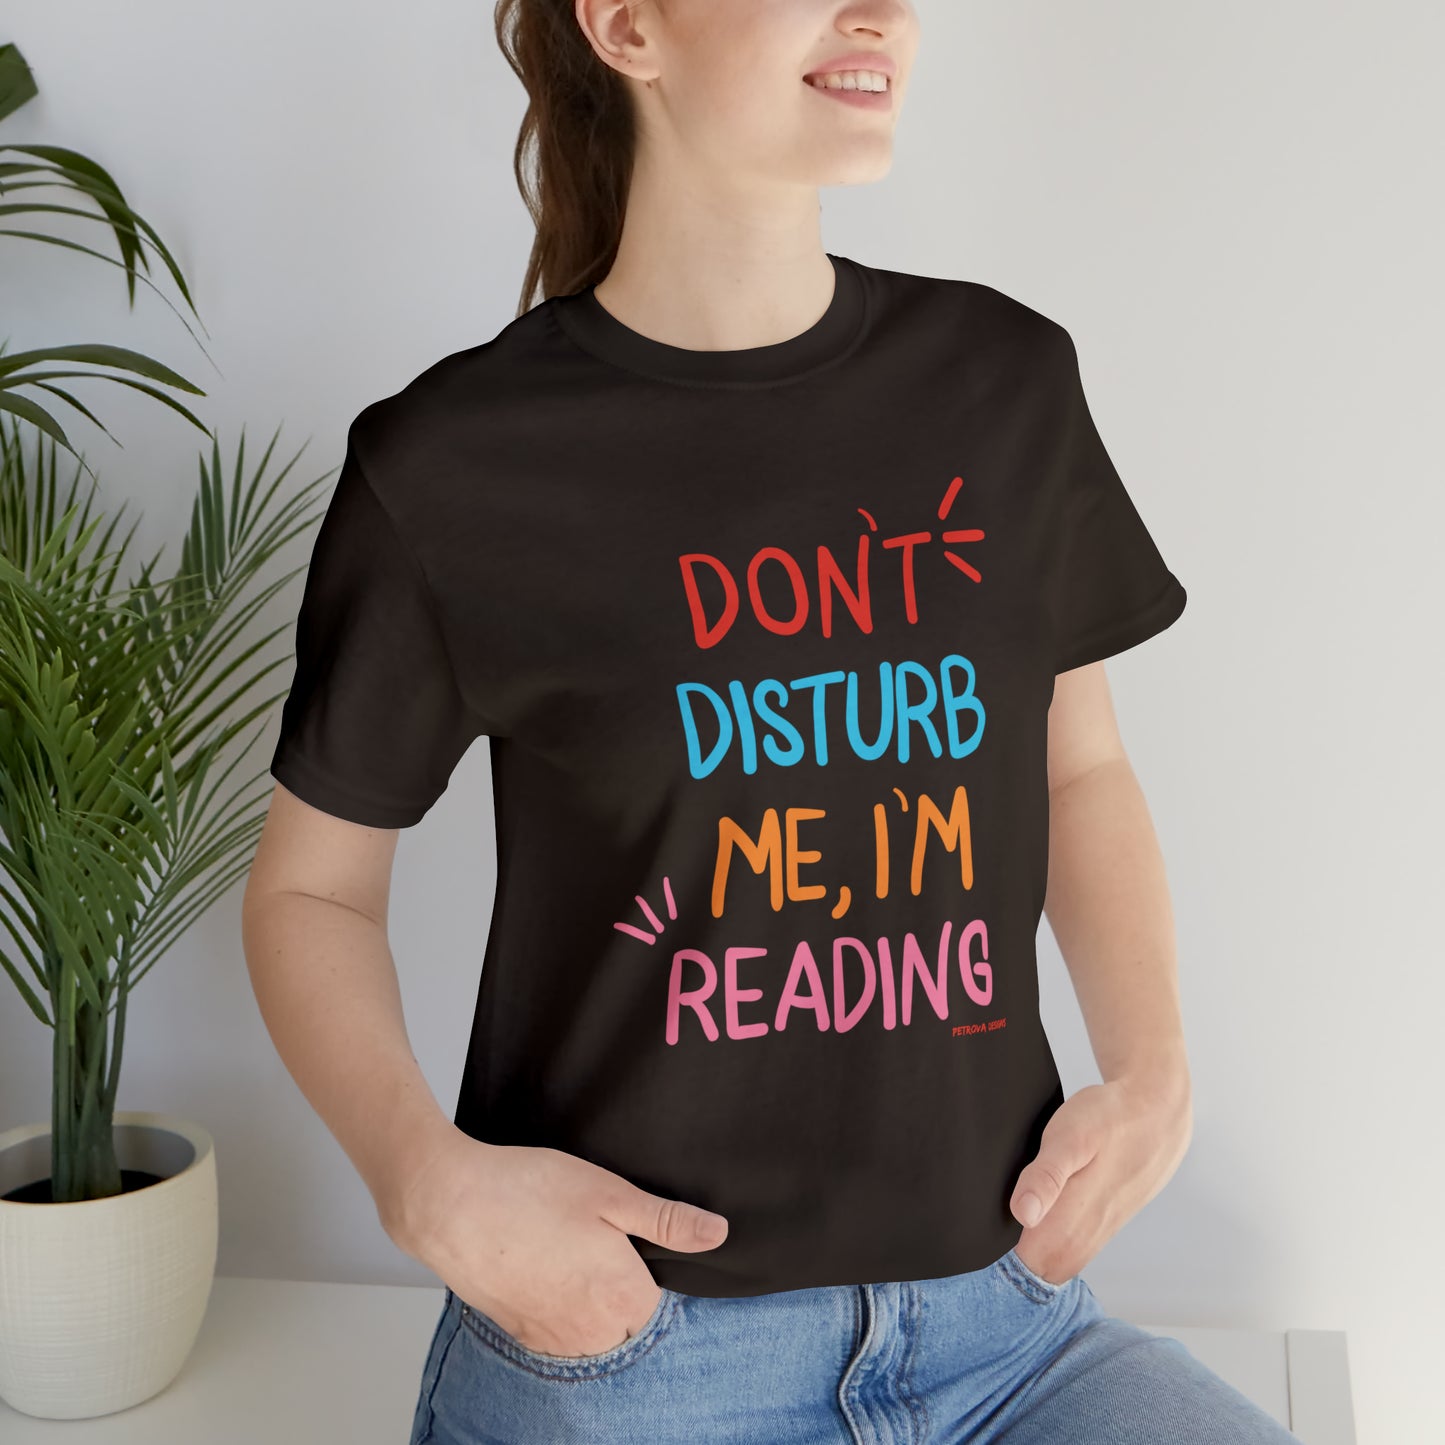 Reader T-Shirt | For Bookworms | Reader Gift Idea Brown T-Shirt Petrova Designs